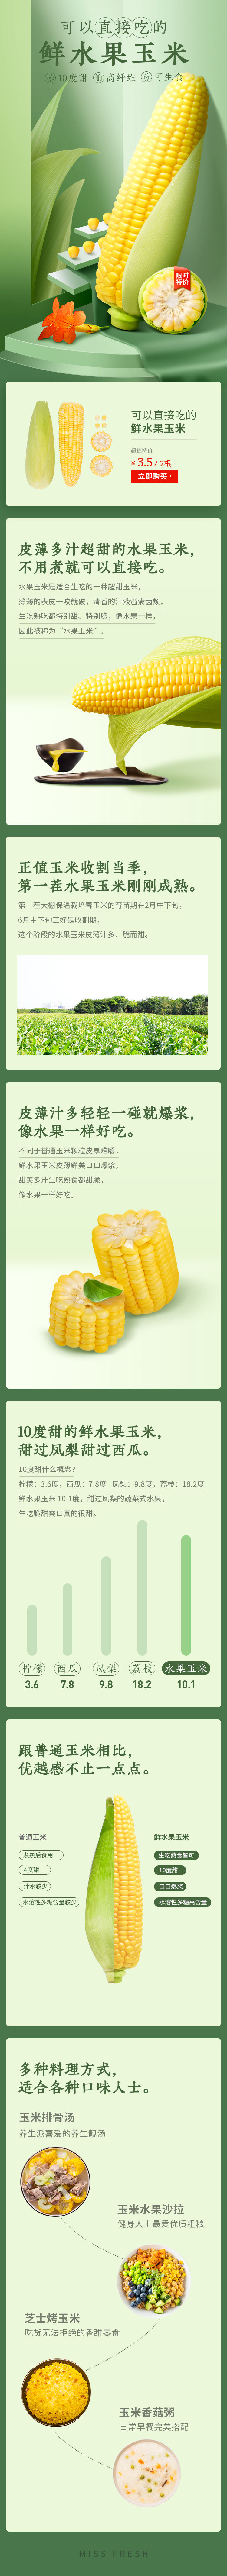 淘宝美工庄庄玉米生鲜食品清新详情页作品